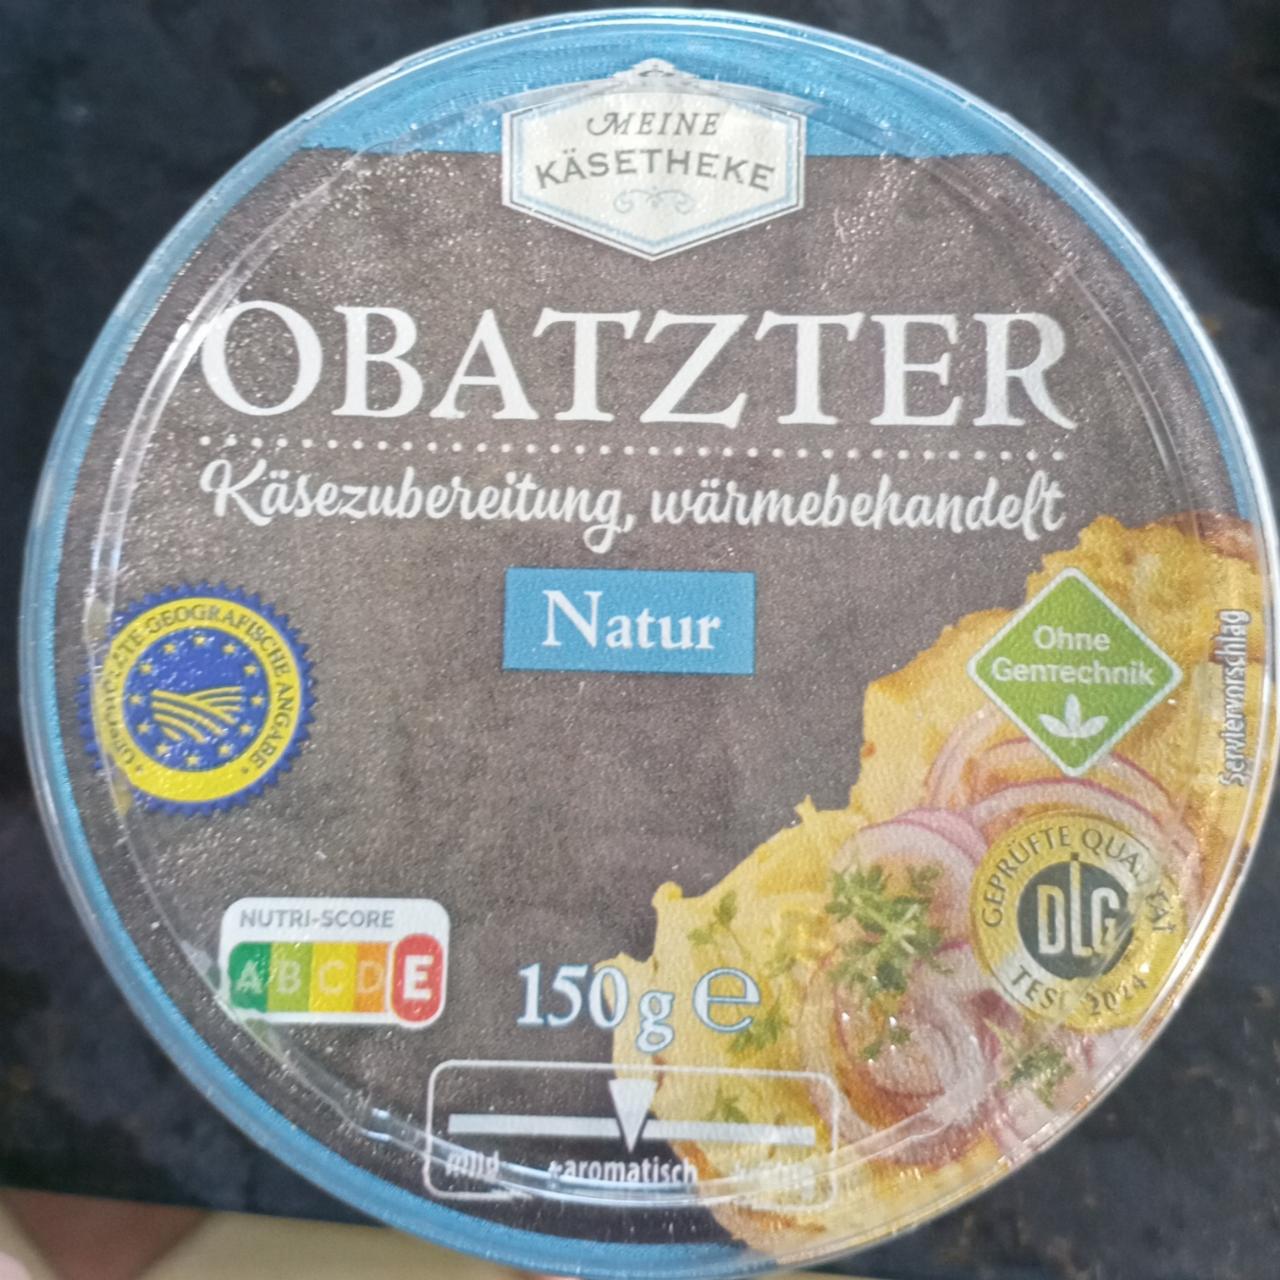 Fotografie - Obatzter Natur Meine Käsetheke